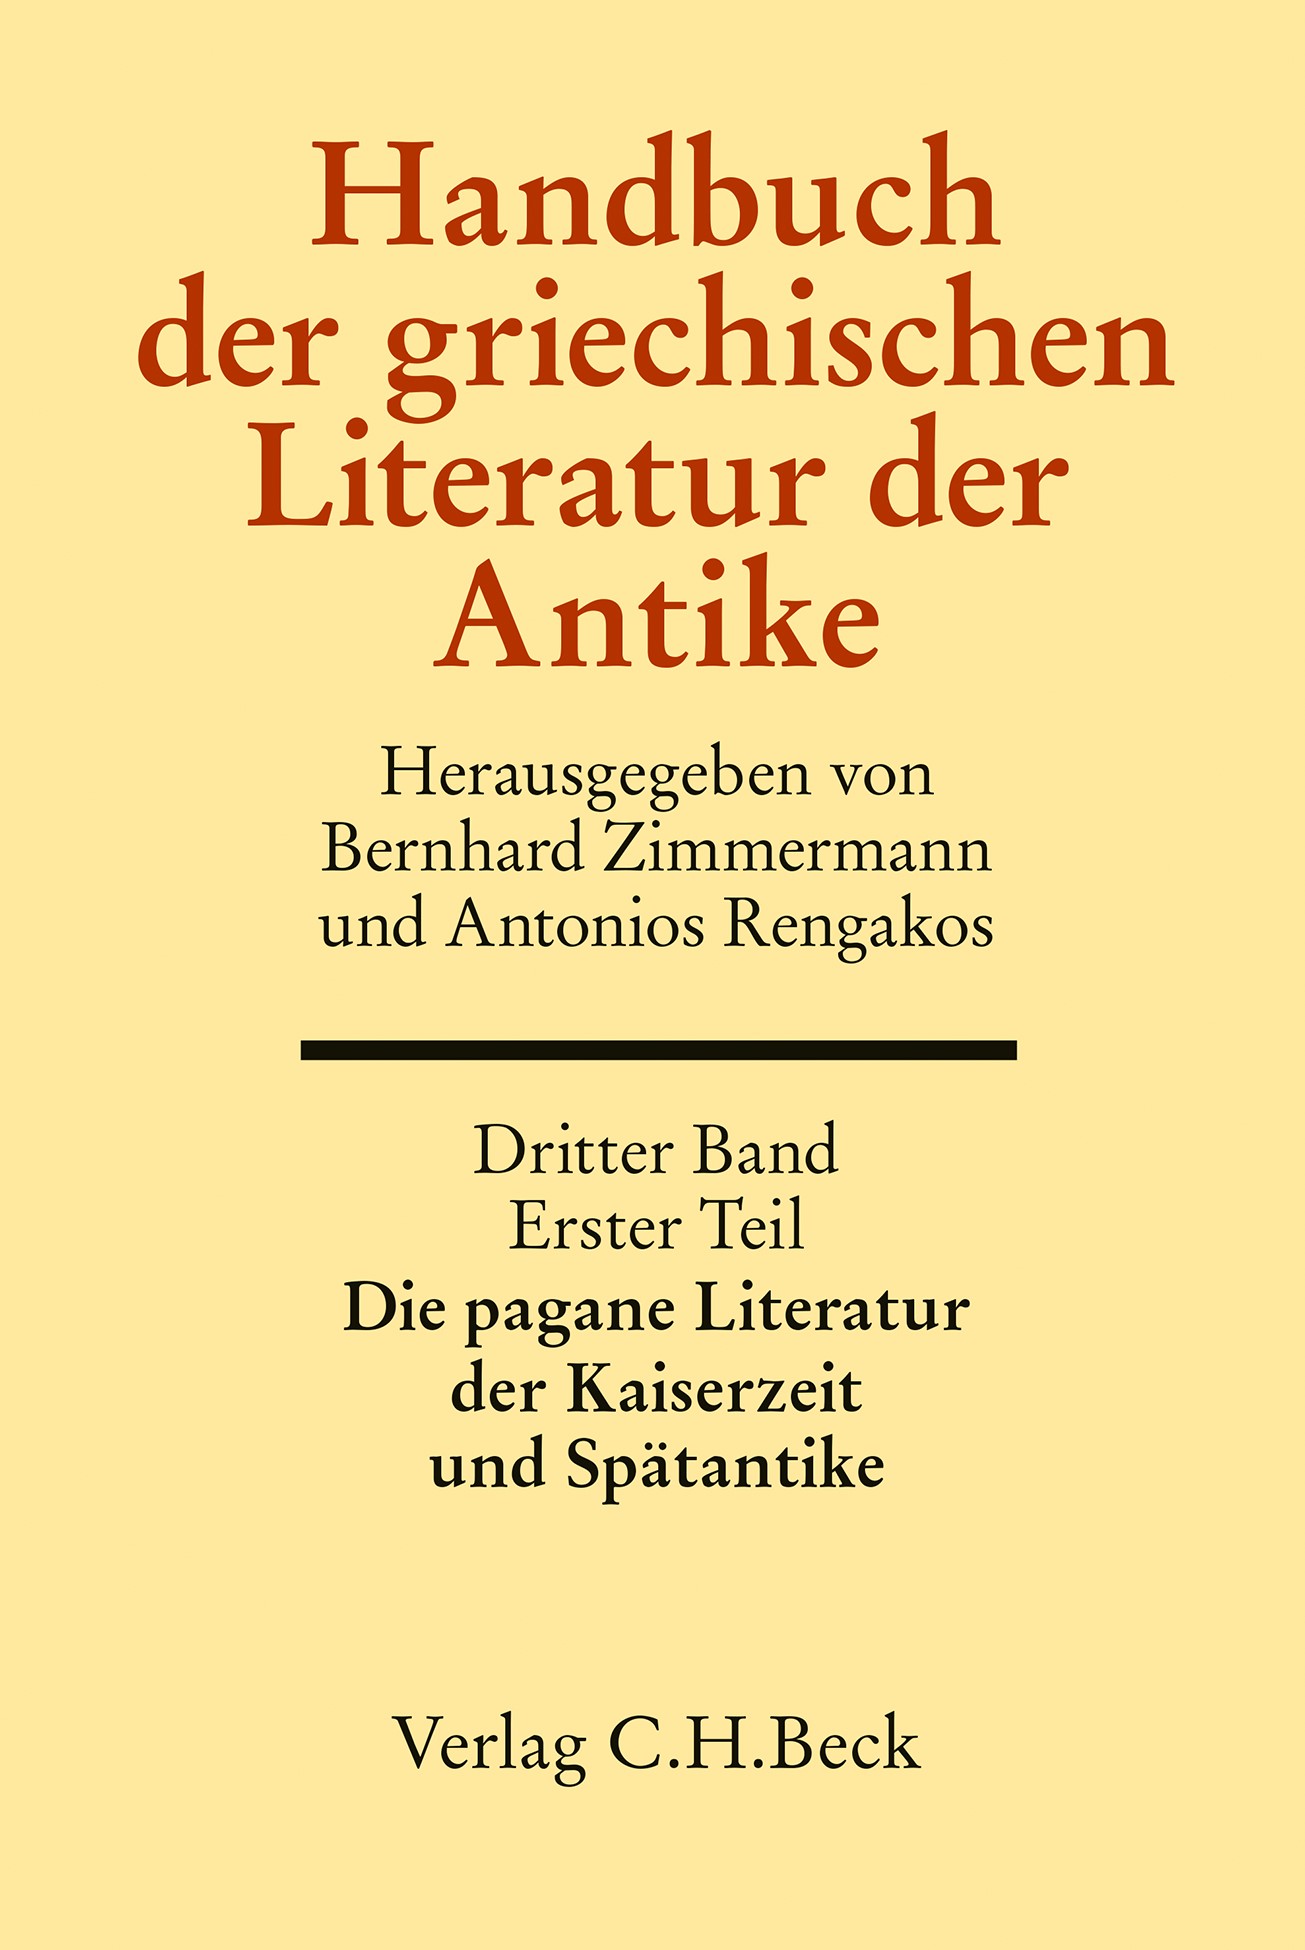 Cover: Zimmermann, Bernhard / Rengakos, Antonios, Handbuch der griechischen Literatur der Antike Bd. 3/1. Tl.: Die pagane Literatur der Kaiserzeit und Spätantike